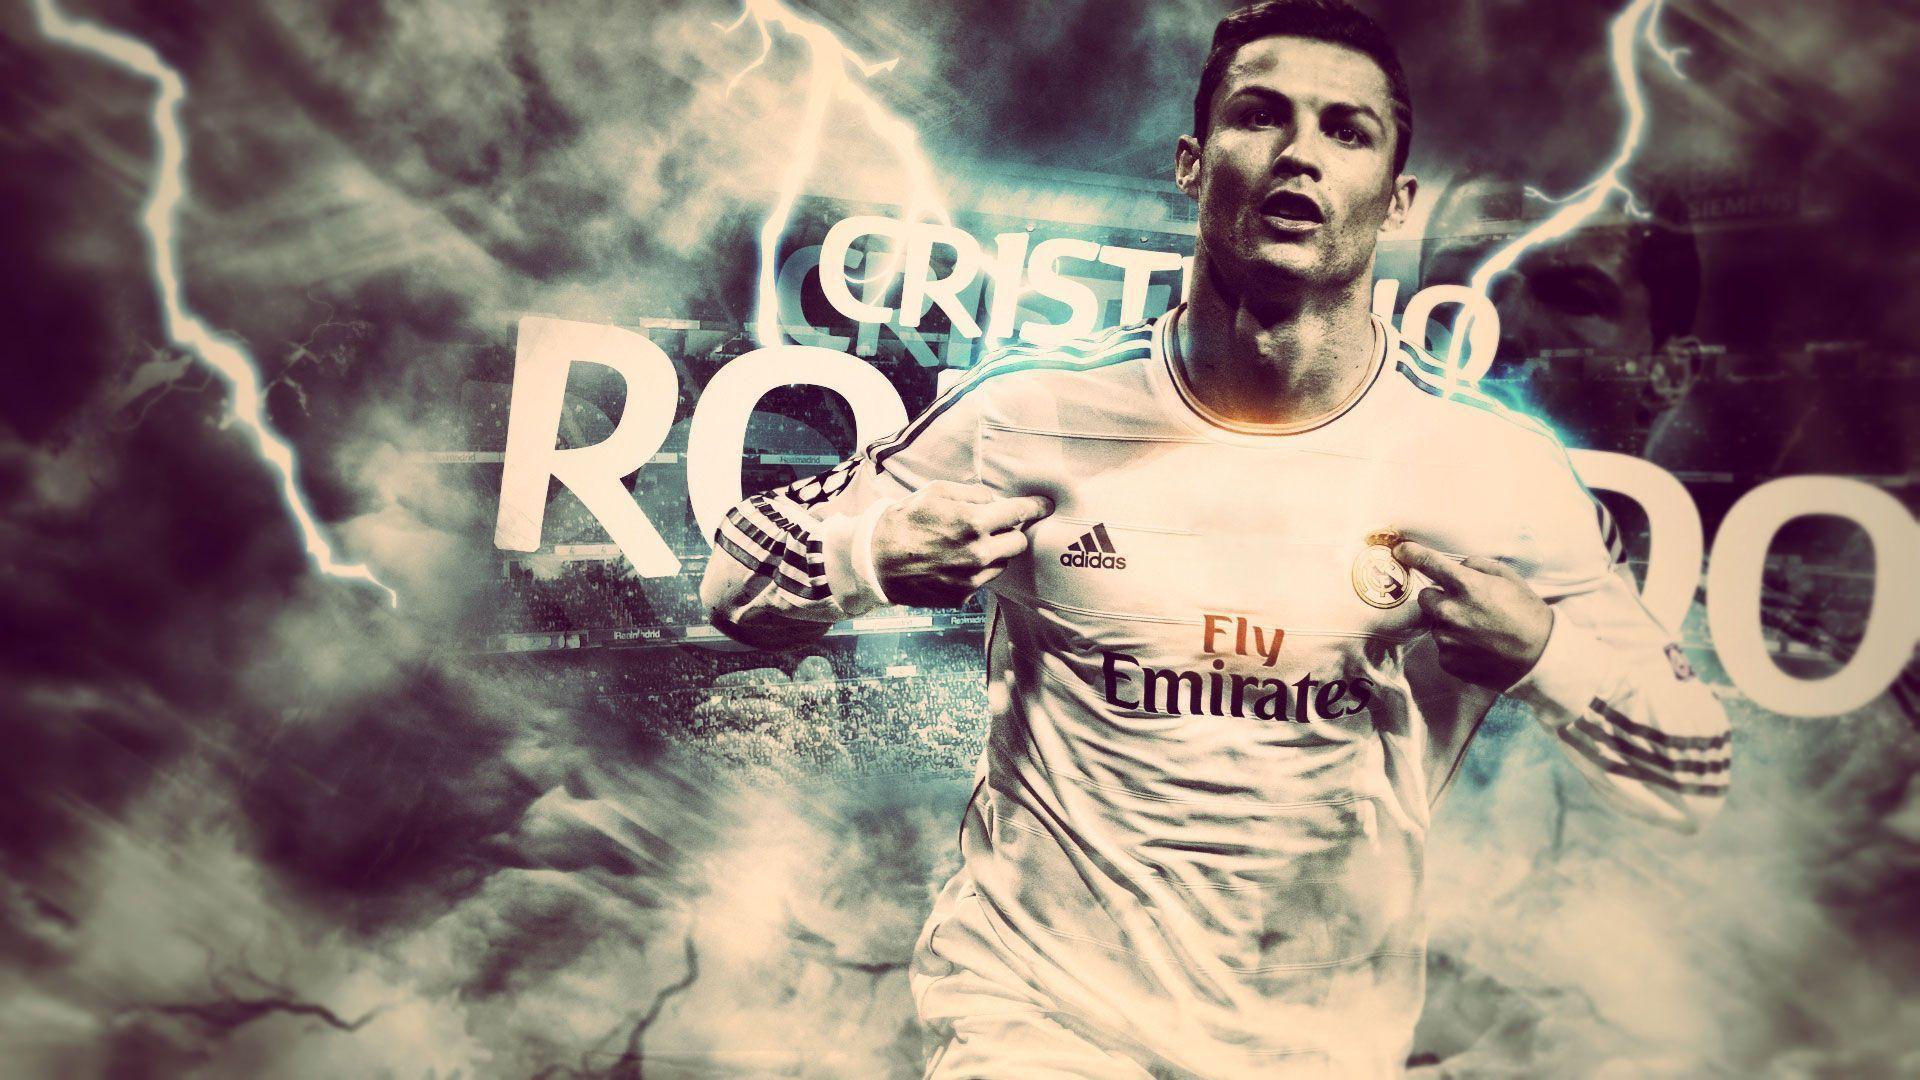 Cristiano Ronaldo CR7 2014 Wallpaper Wide or HD | Male Celebrities ...